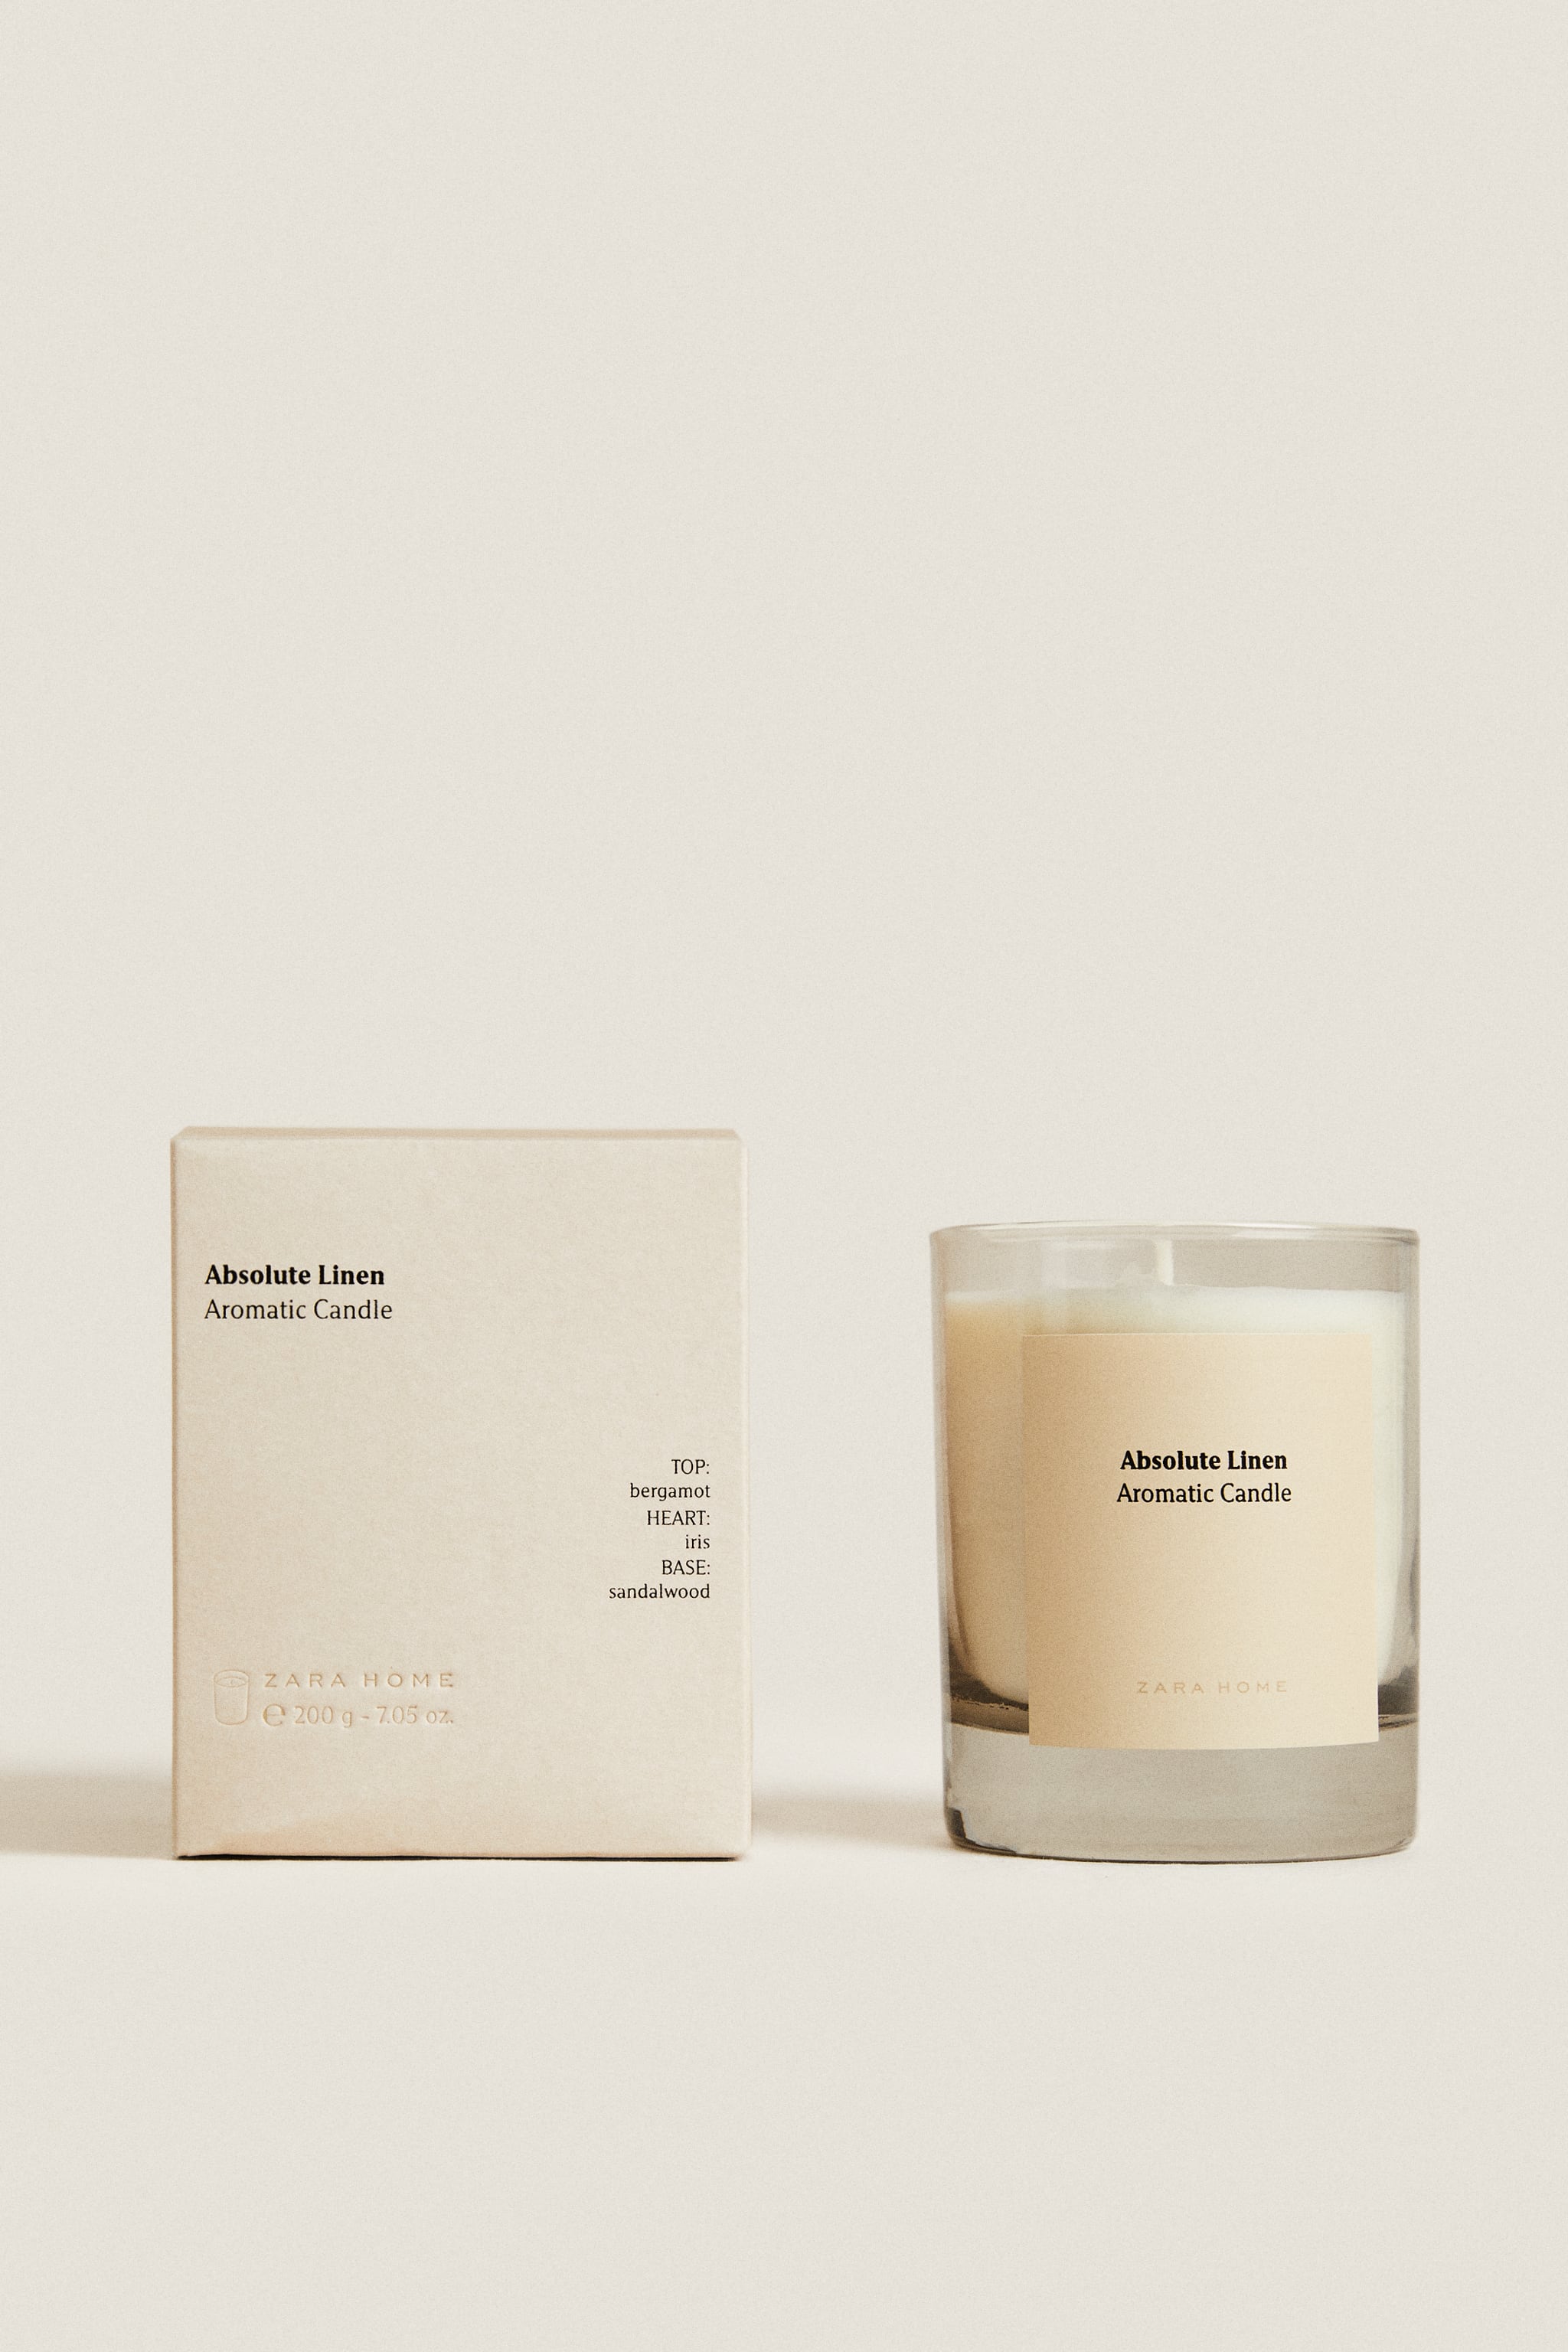 (200 г) ароматическая свеча из абсолютного льна Zara, горчица цена и фото